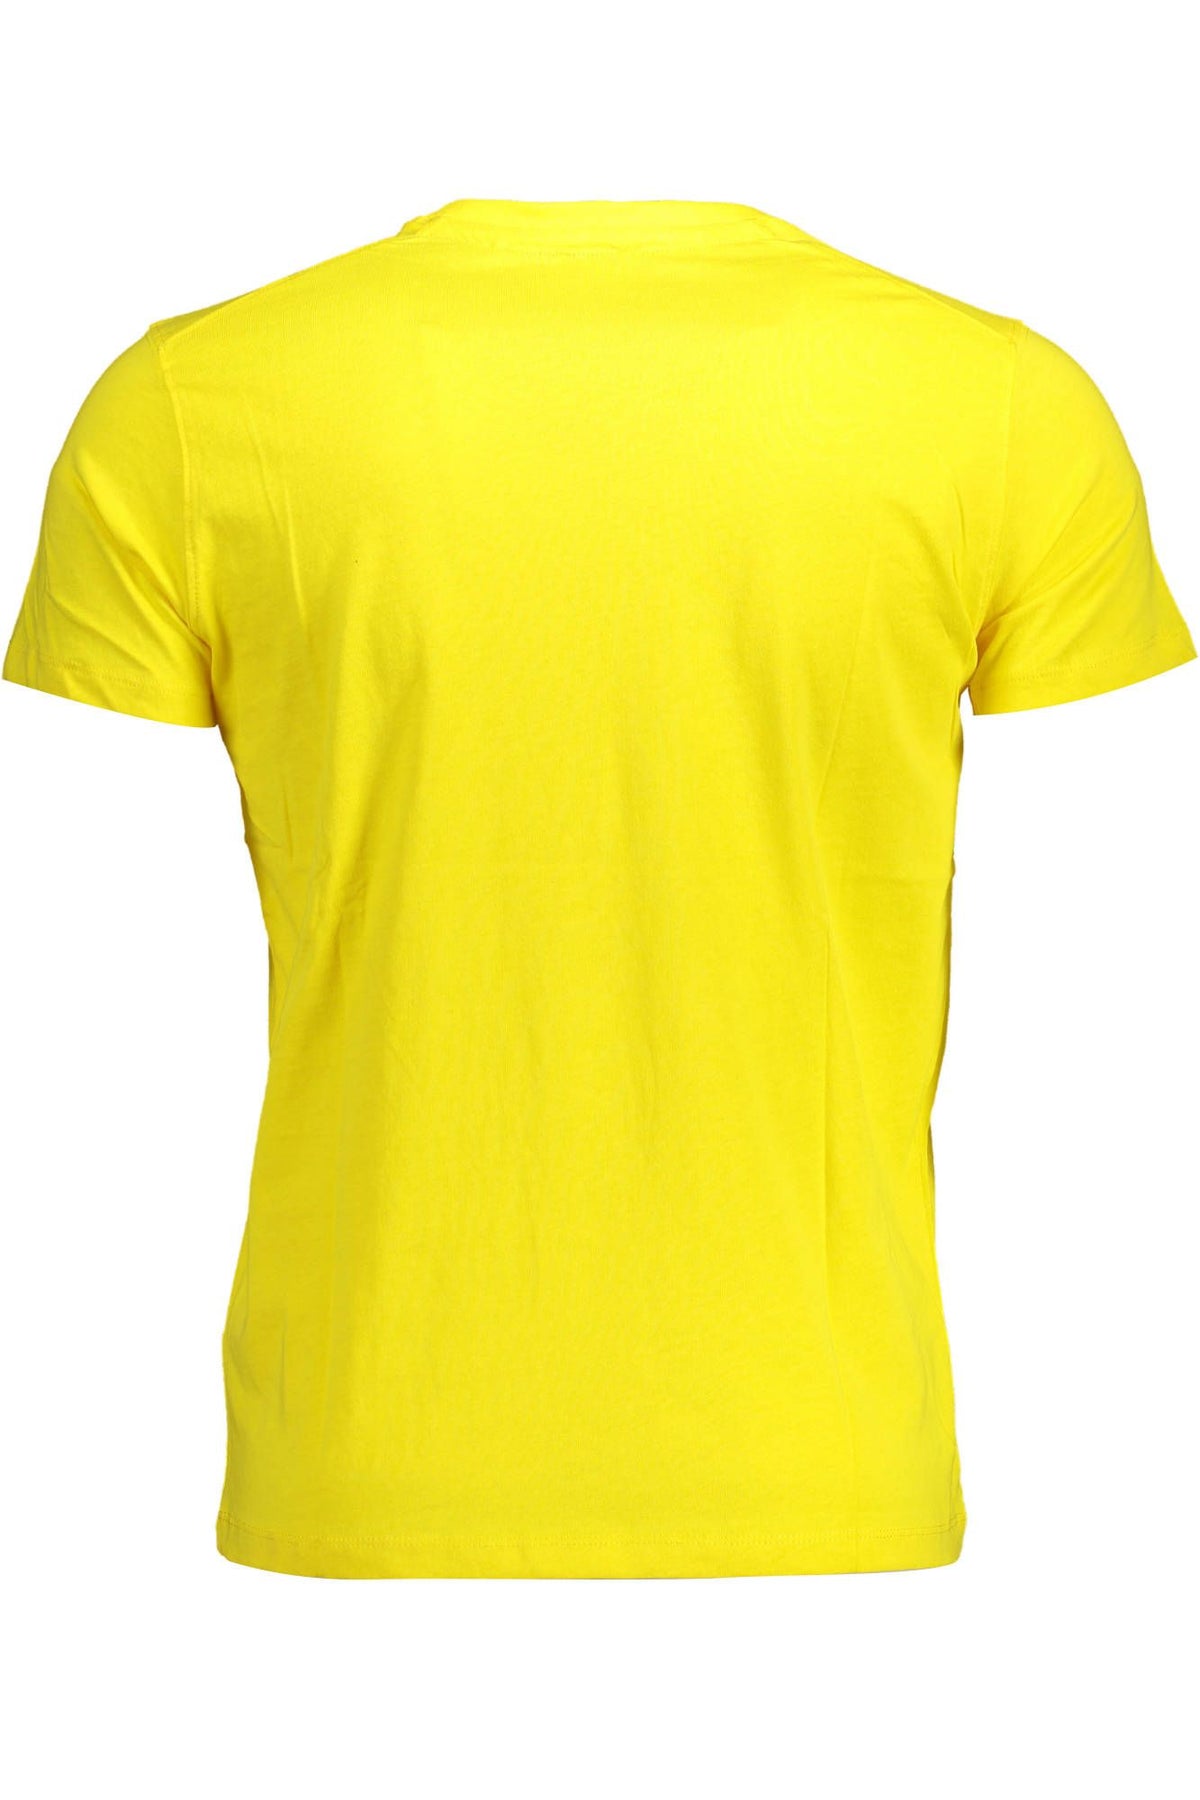 U.S. POLO ASSN. Sunny Yellow Crew Neck Logo Tee